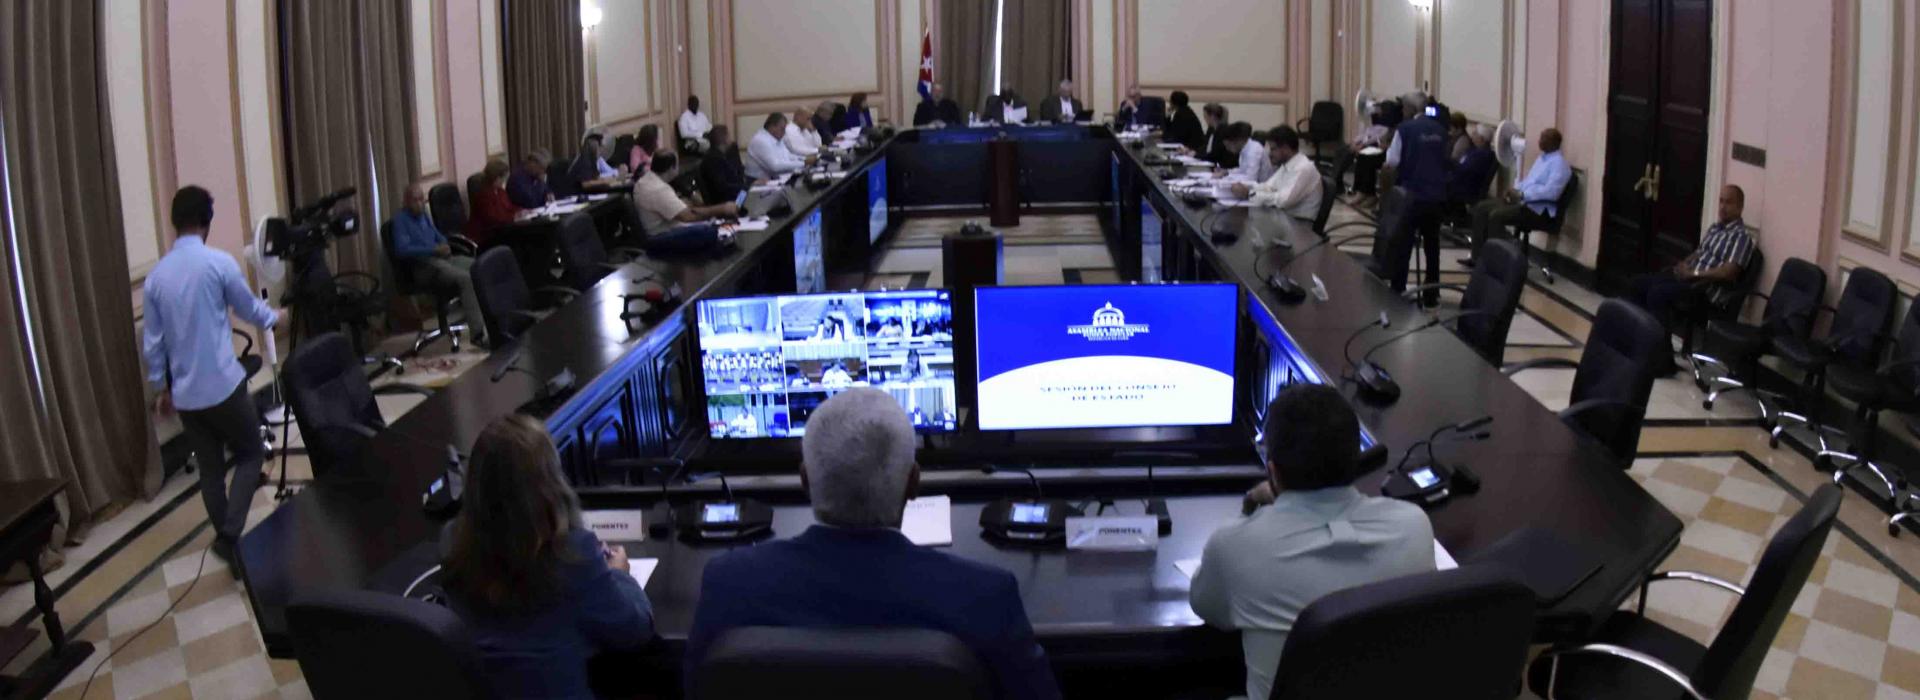 Analiza Consejo de Estado temas de la agenda del Segundo Período Ordinario de Sesiones de la Asamblea Nacional 